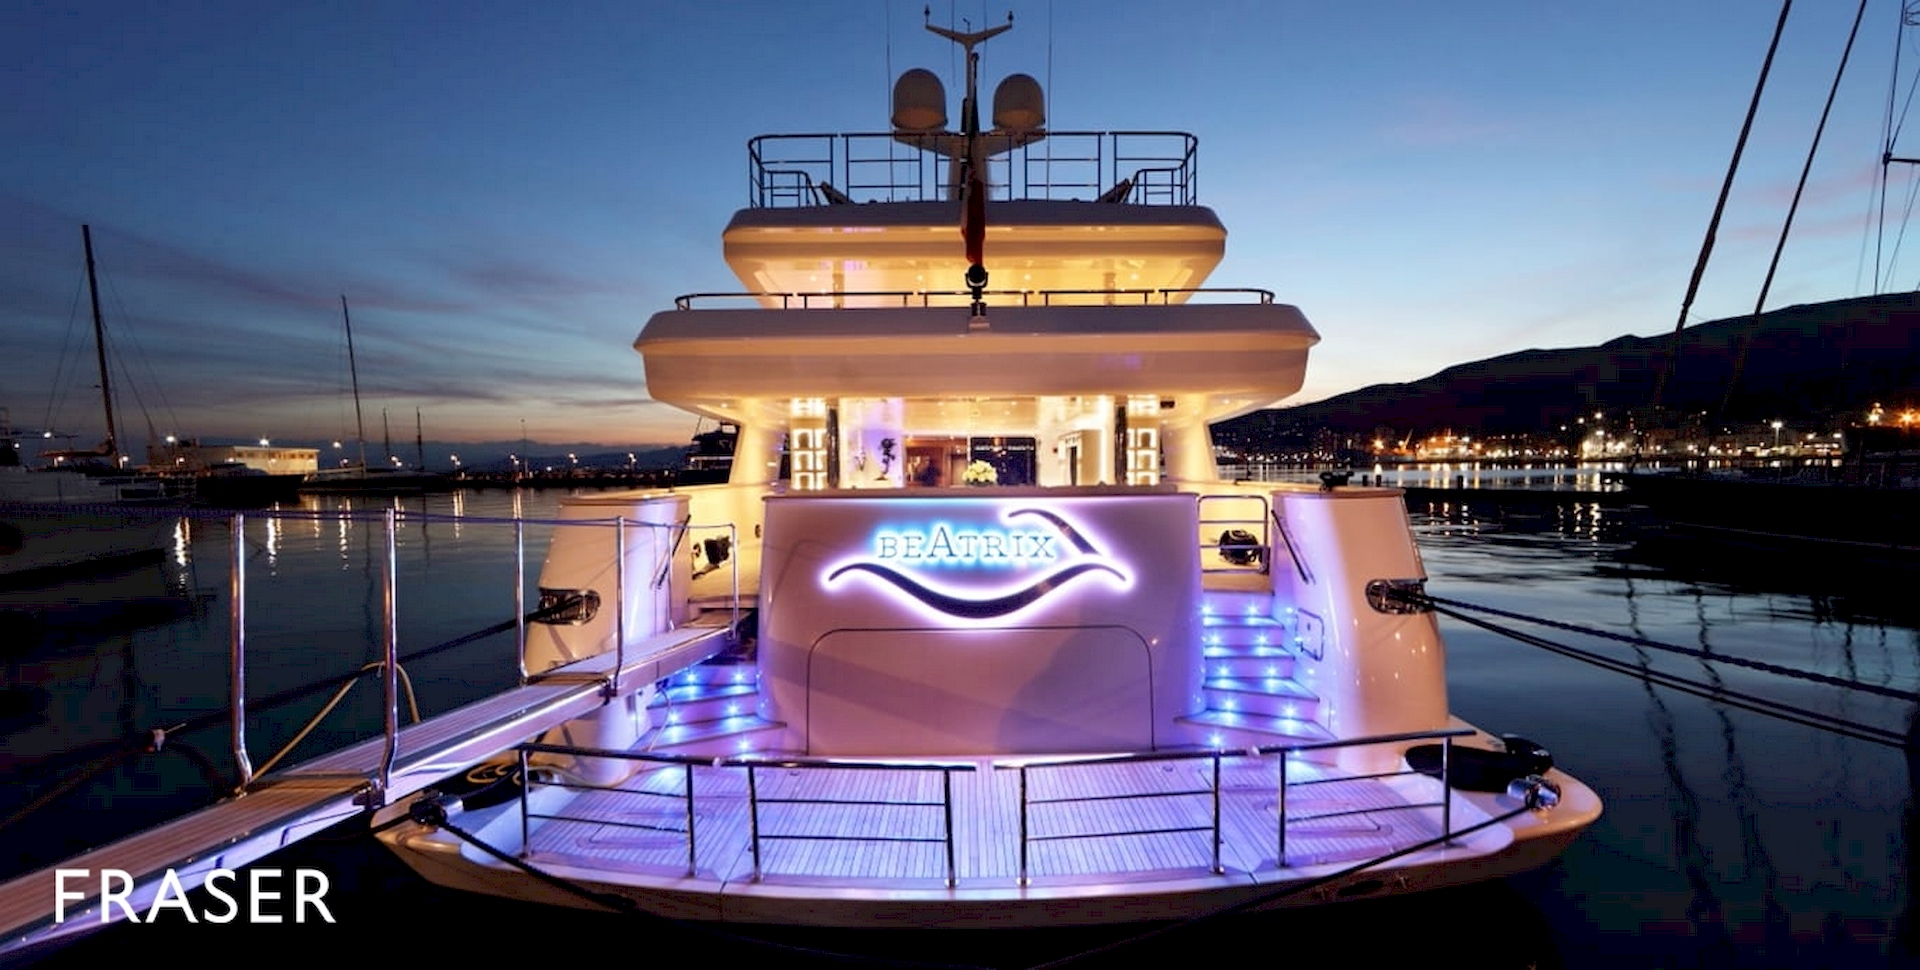 poppa yacht Beatrix interni barca realizzati dal Gruppo Rodi 